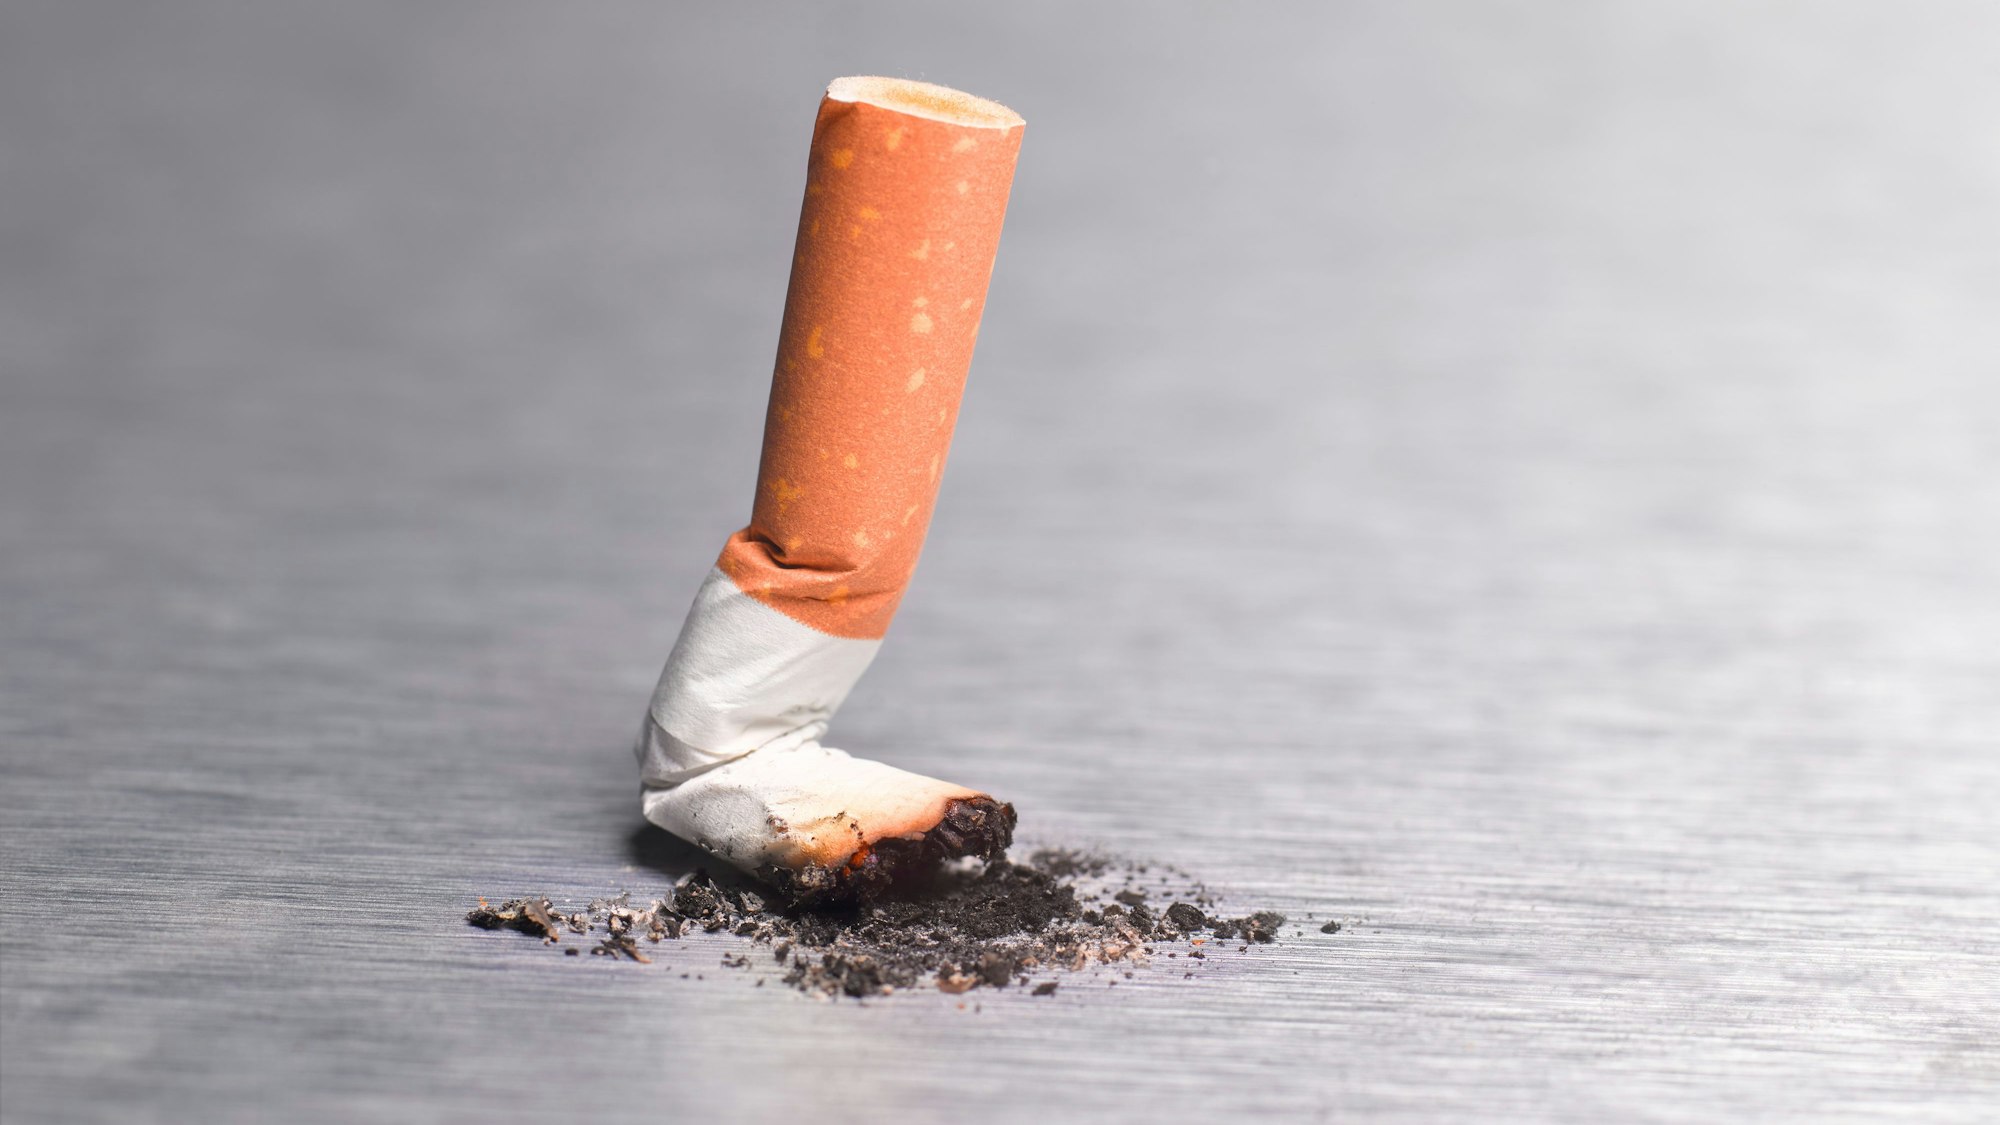 Ausgedrückte Zigarette, Nichtraucher werden

Peter Dazeley/Getty Images